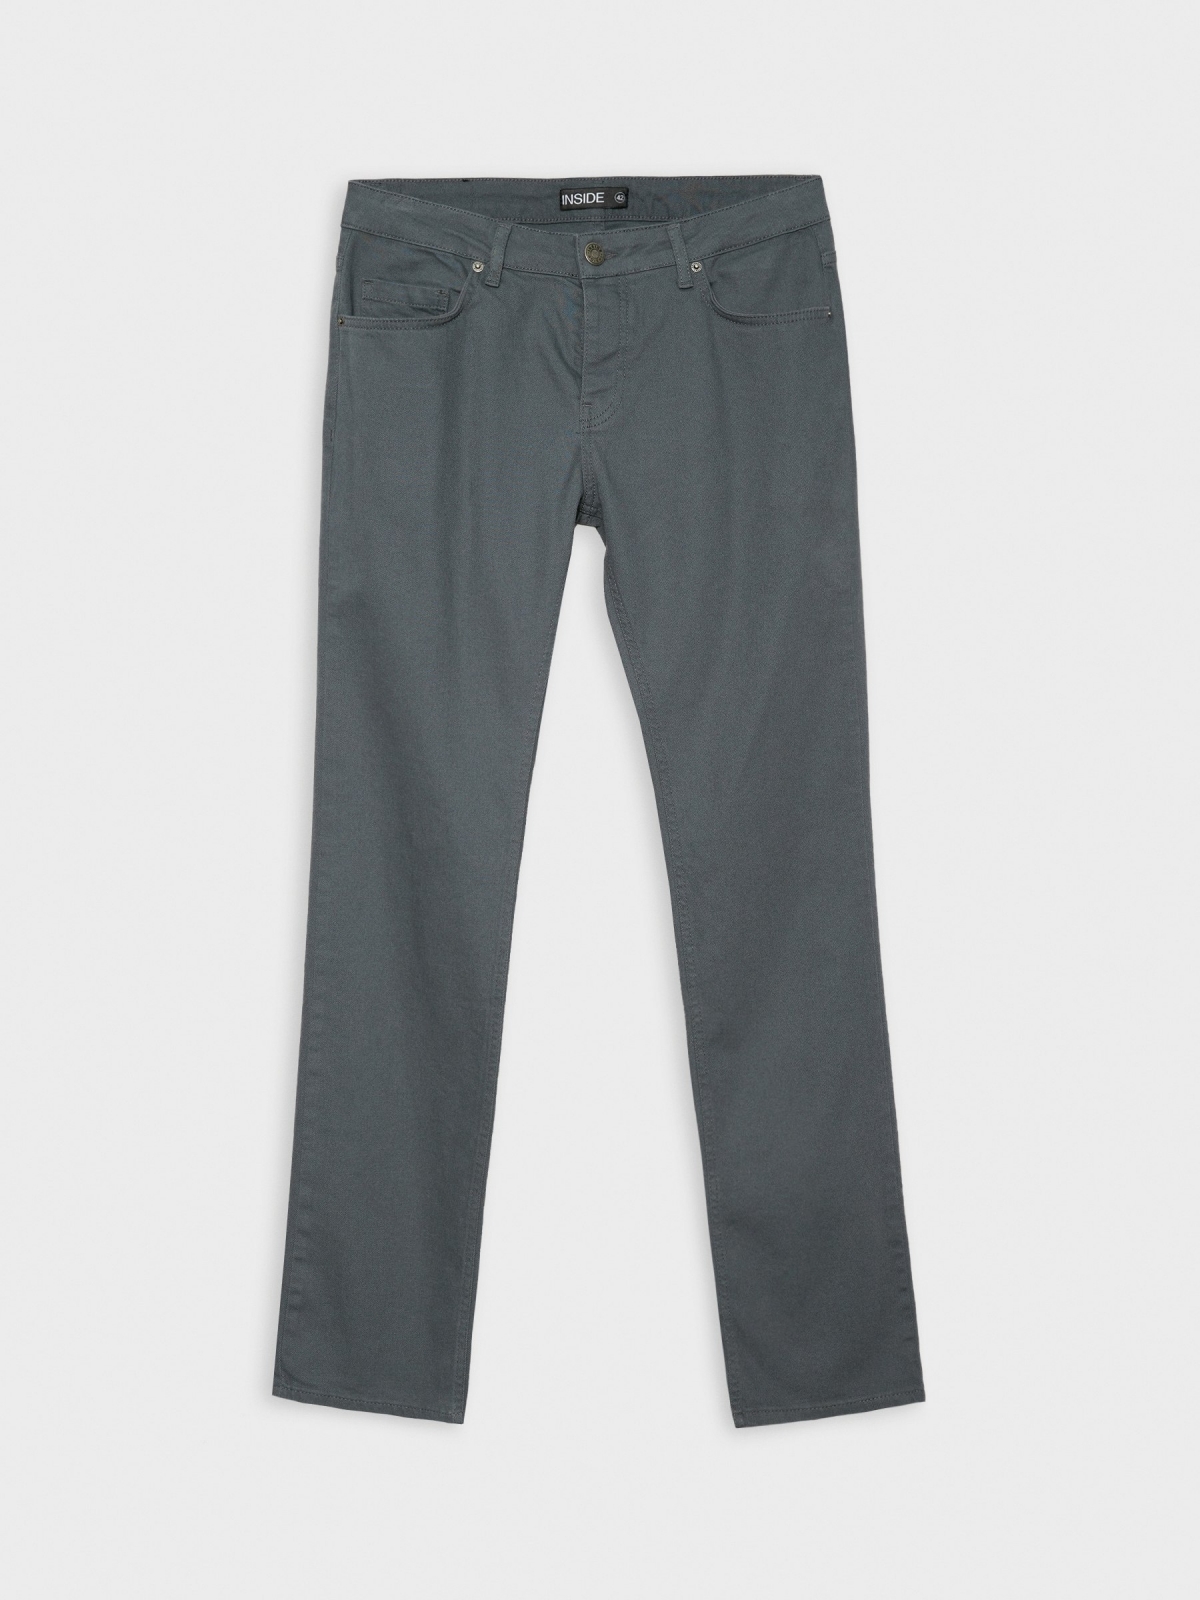  Pantalón regular cinco bolsillos gris